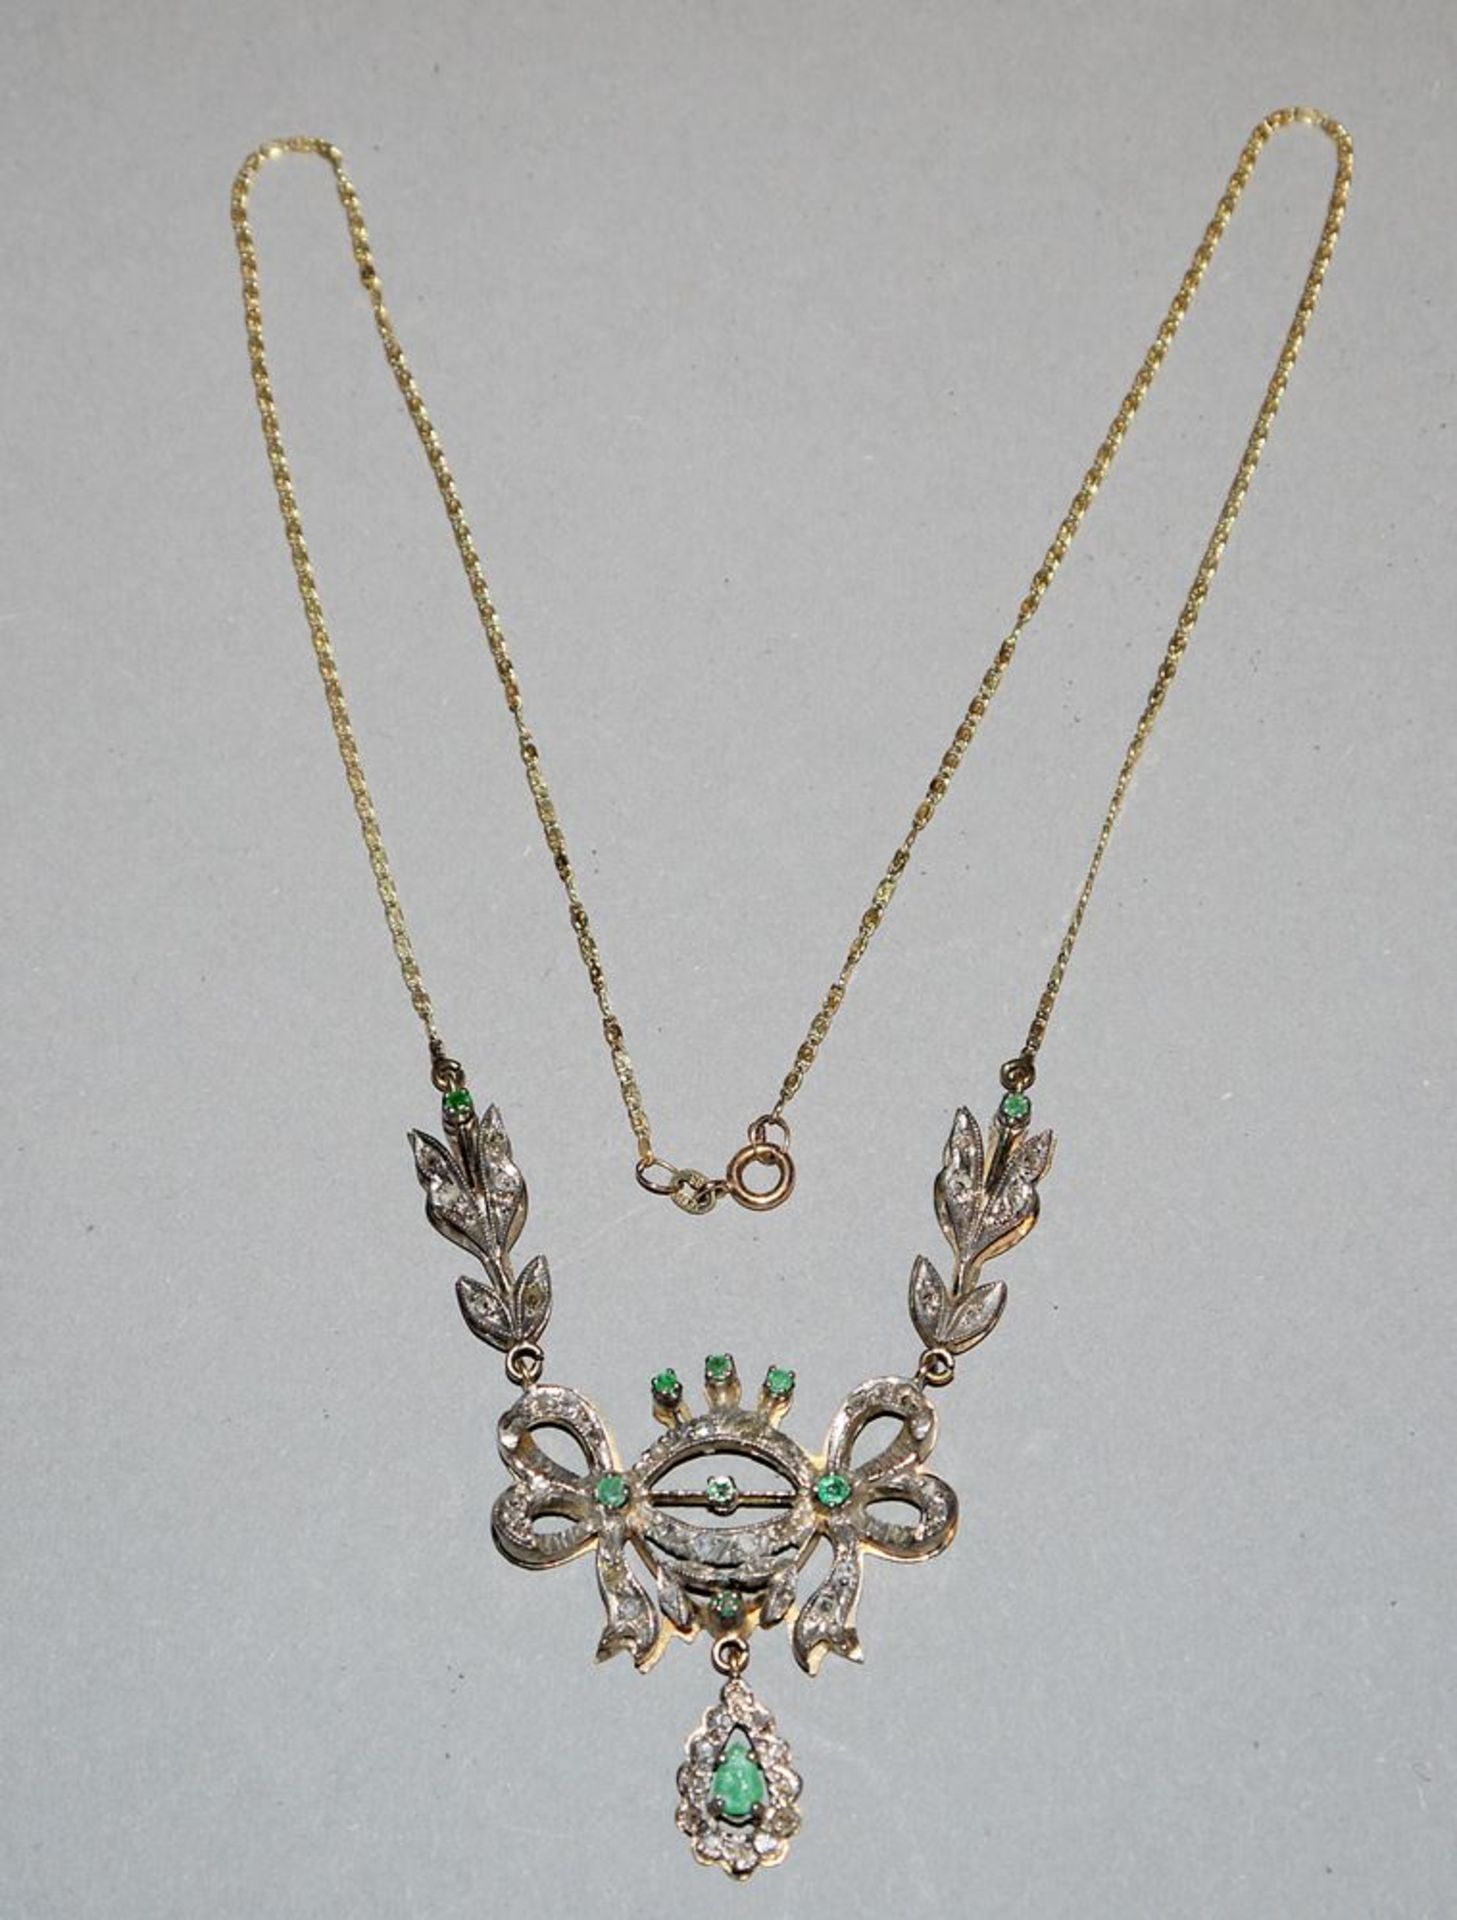 Collier mit Smaragden und Diamanten, Gold/Silber um 1900. Liebhaberstück, mit Gutachen - Image 2 of 2